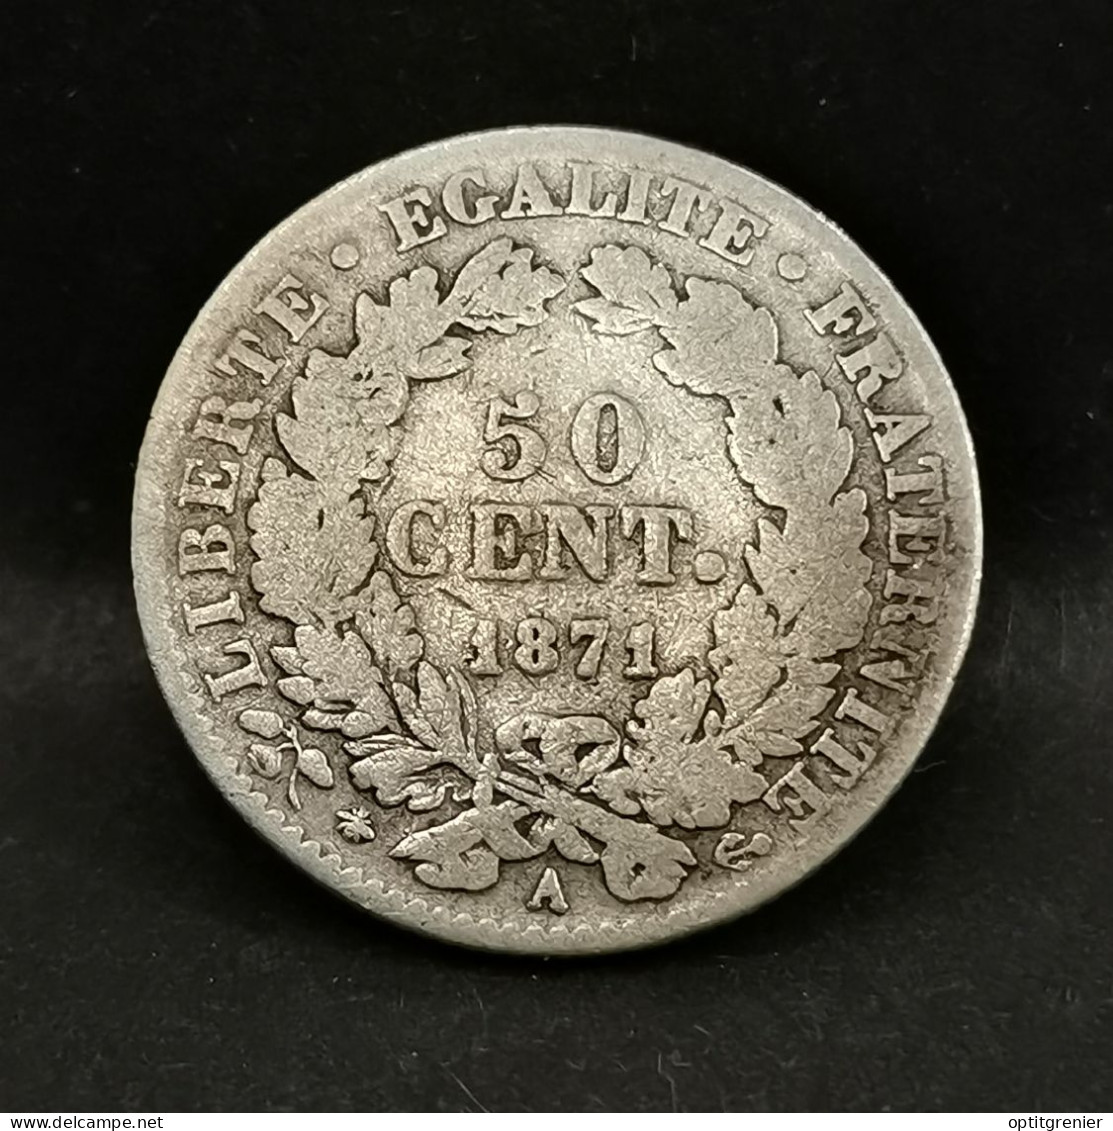 50 CENTIMES CERES ARGENT 1871 A PARIS 235803 EX. FRANCE / SILVER - 50 Centimes